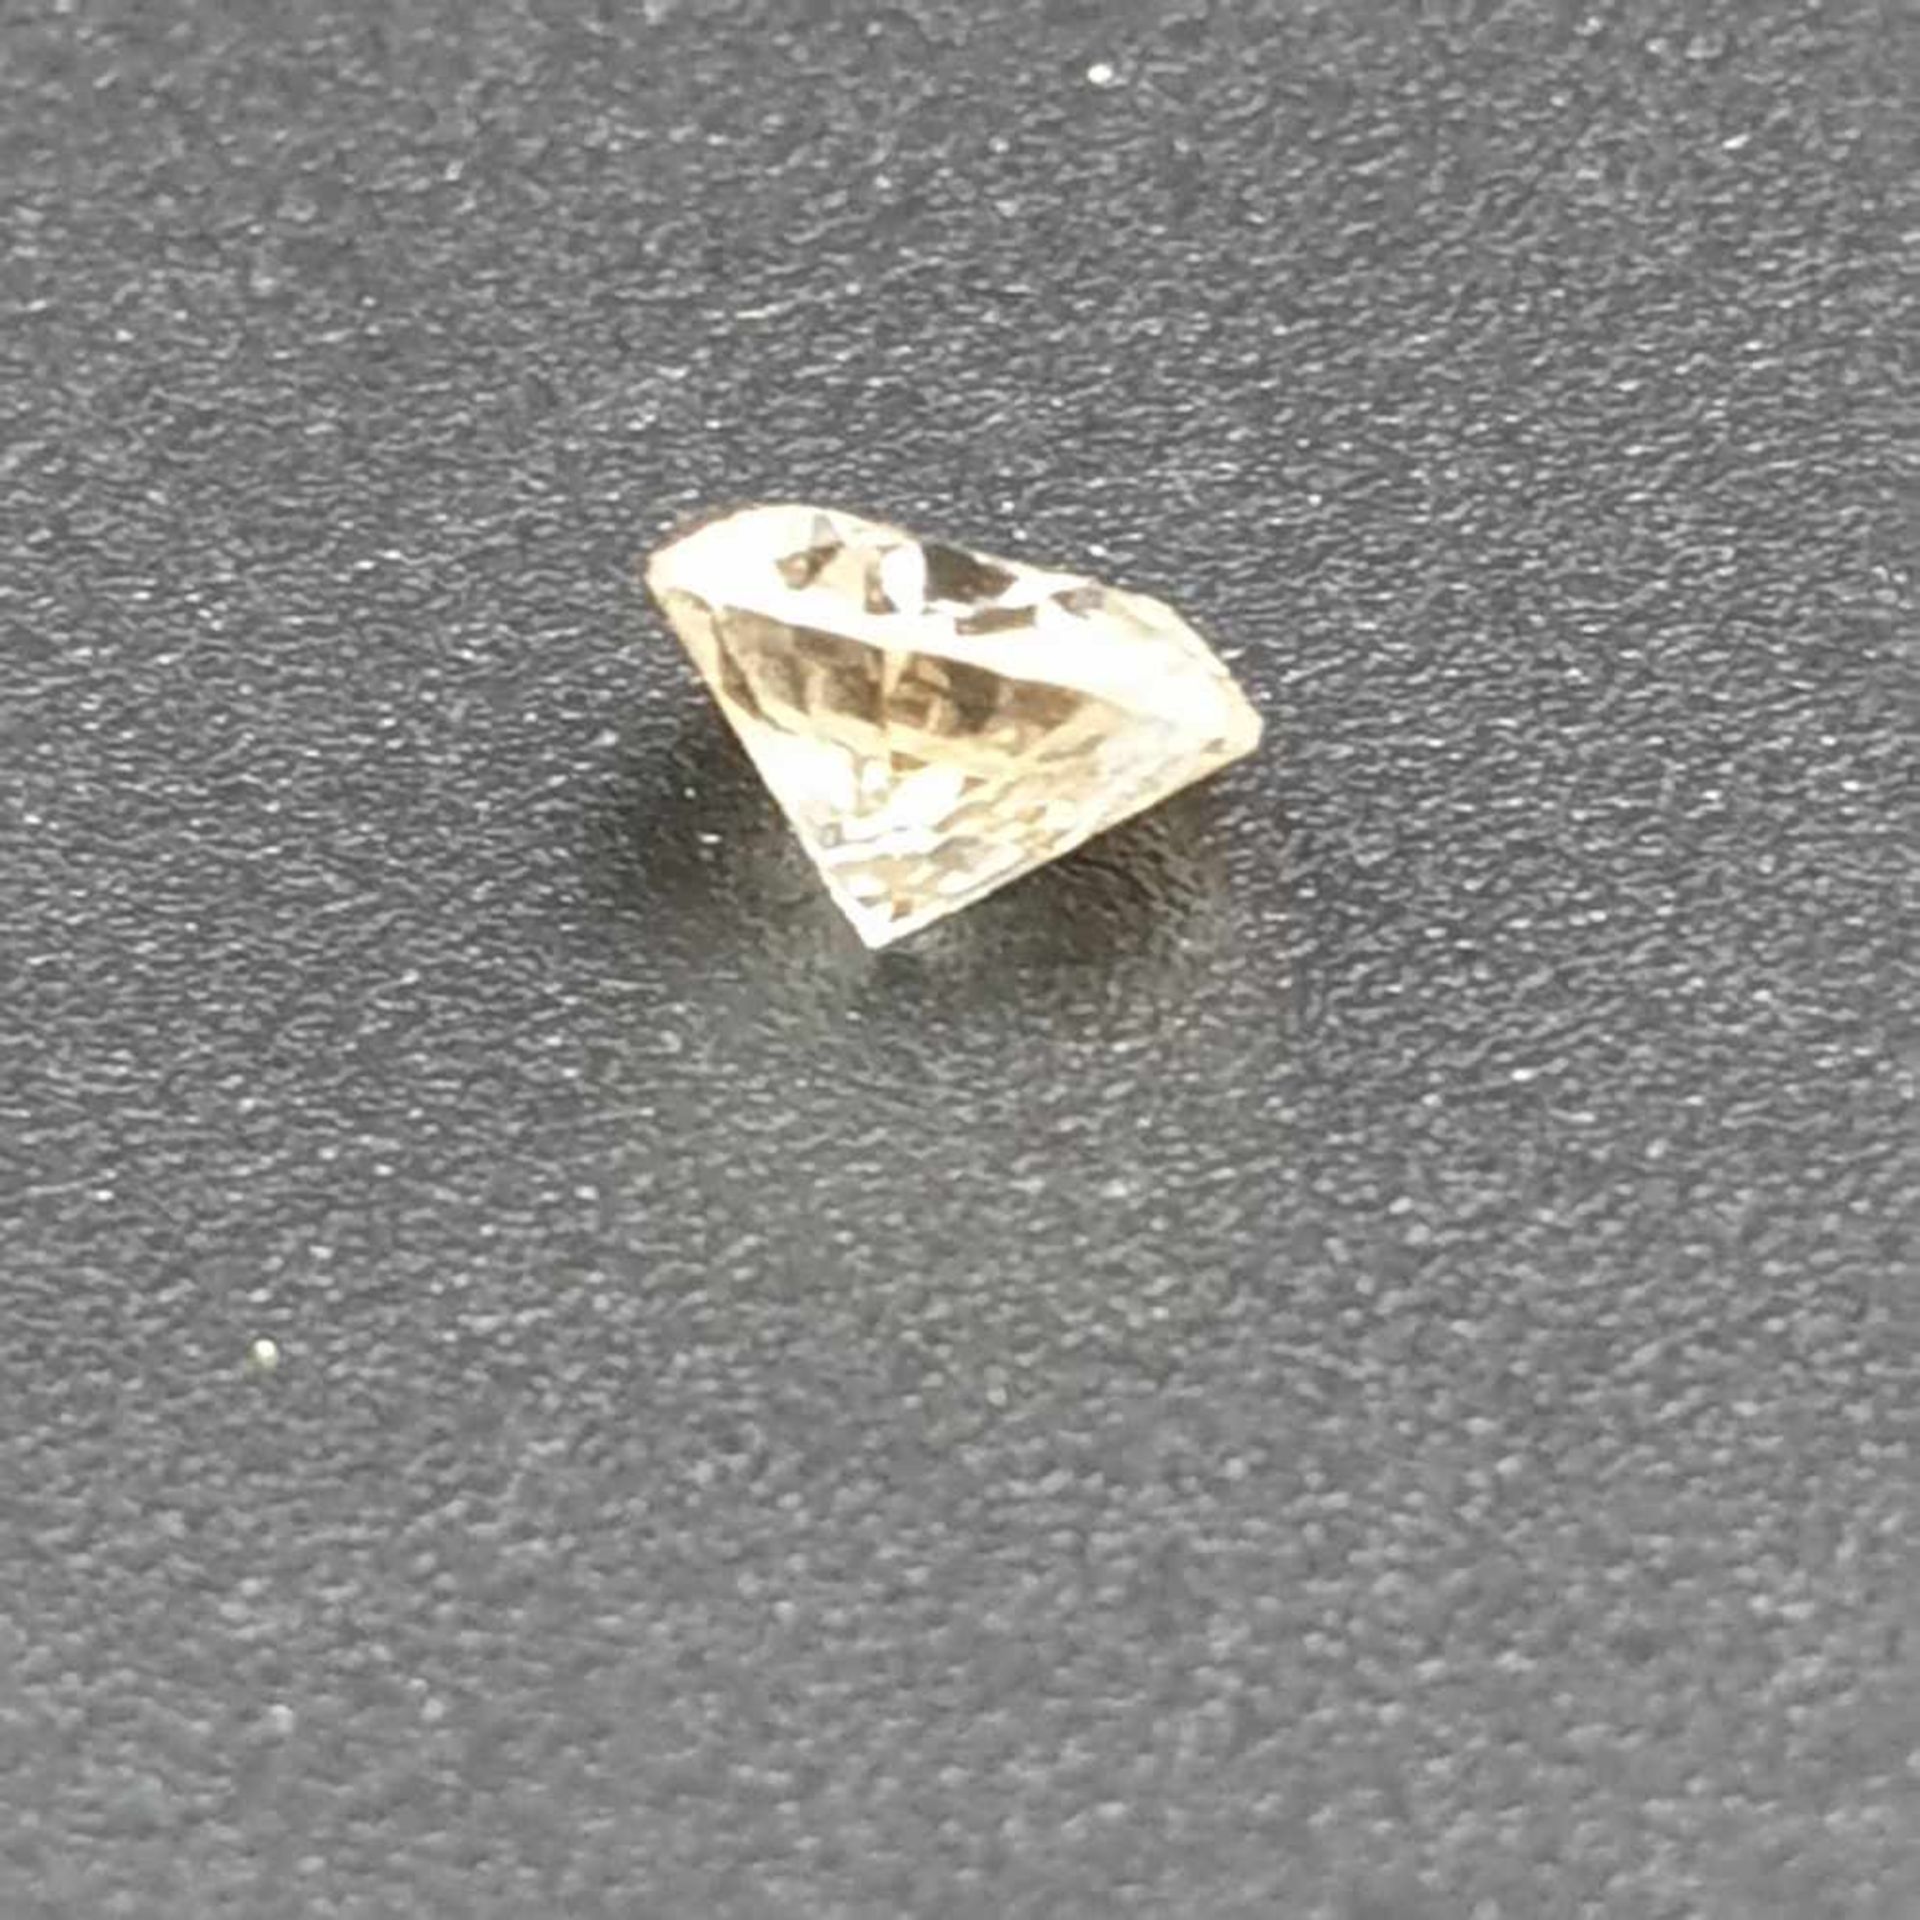 Loser Diamant - Schliffform: Brilliant, Gewicht: 0,5 ct., leicht getöntes Weiß - Bild 3 aus 3